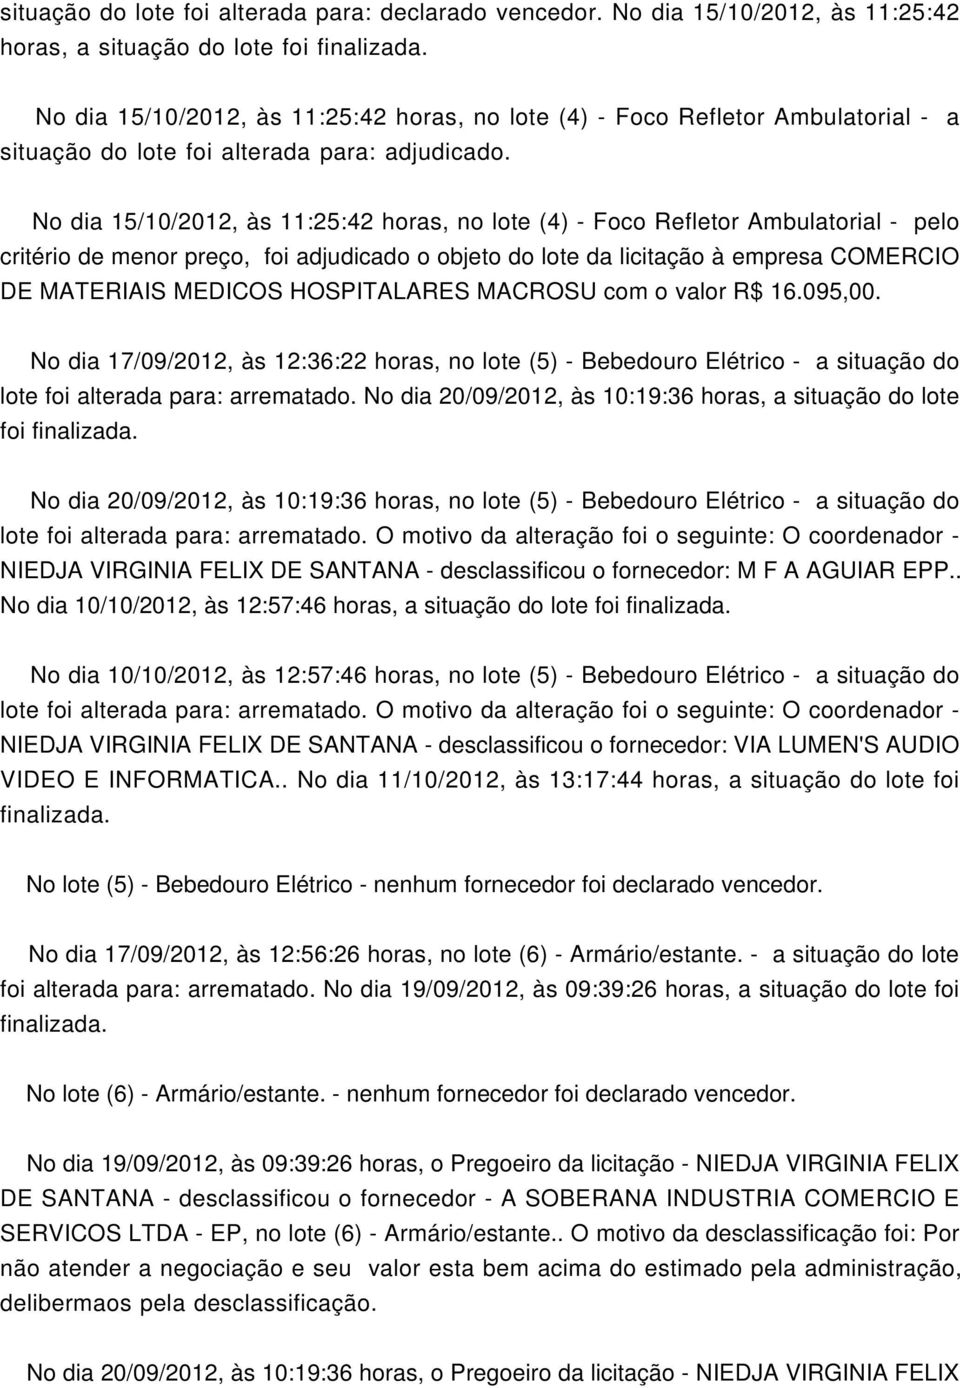 No dia 15/10/2012, às 11:25:42 horas, no lote (4) - Foco Refletor Ambulatorial - pelo critério de menor preço, foi adjudicado o objeto do lote da licitação à empresa COMERCIO DE MATERIAIS MEDICOS